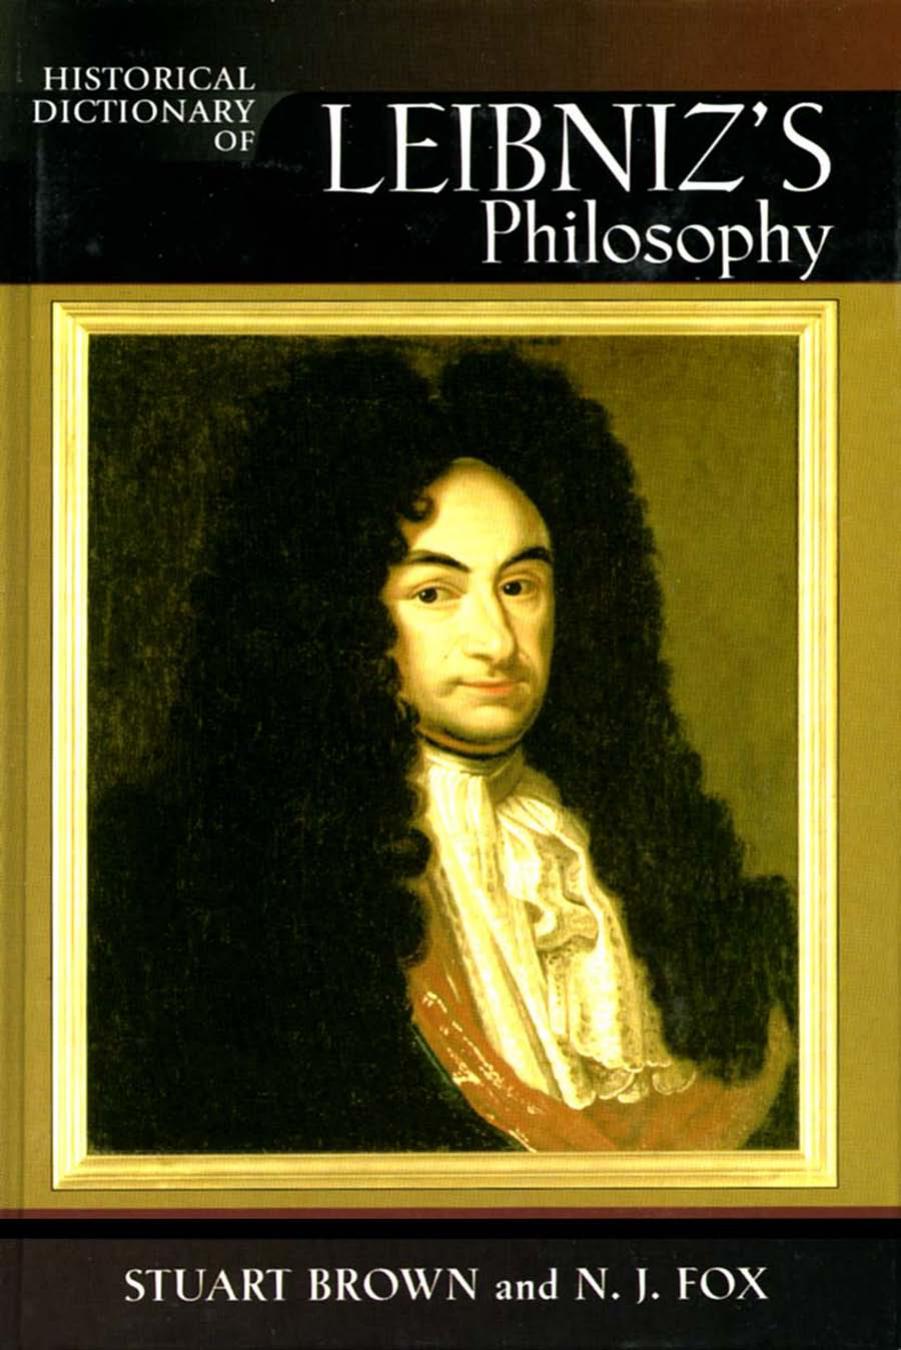 Historical dictionary of Leibniz's philosophy